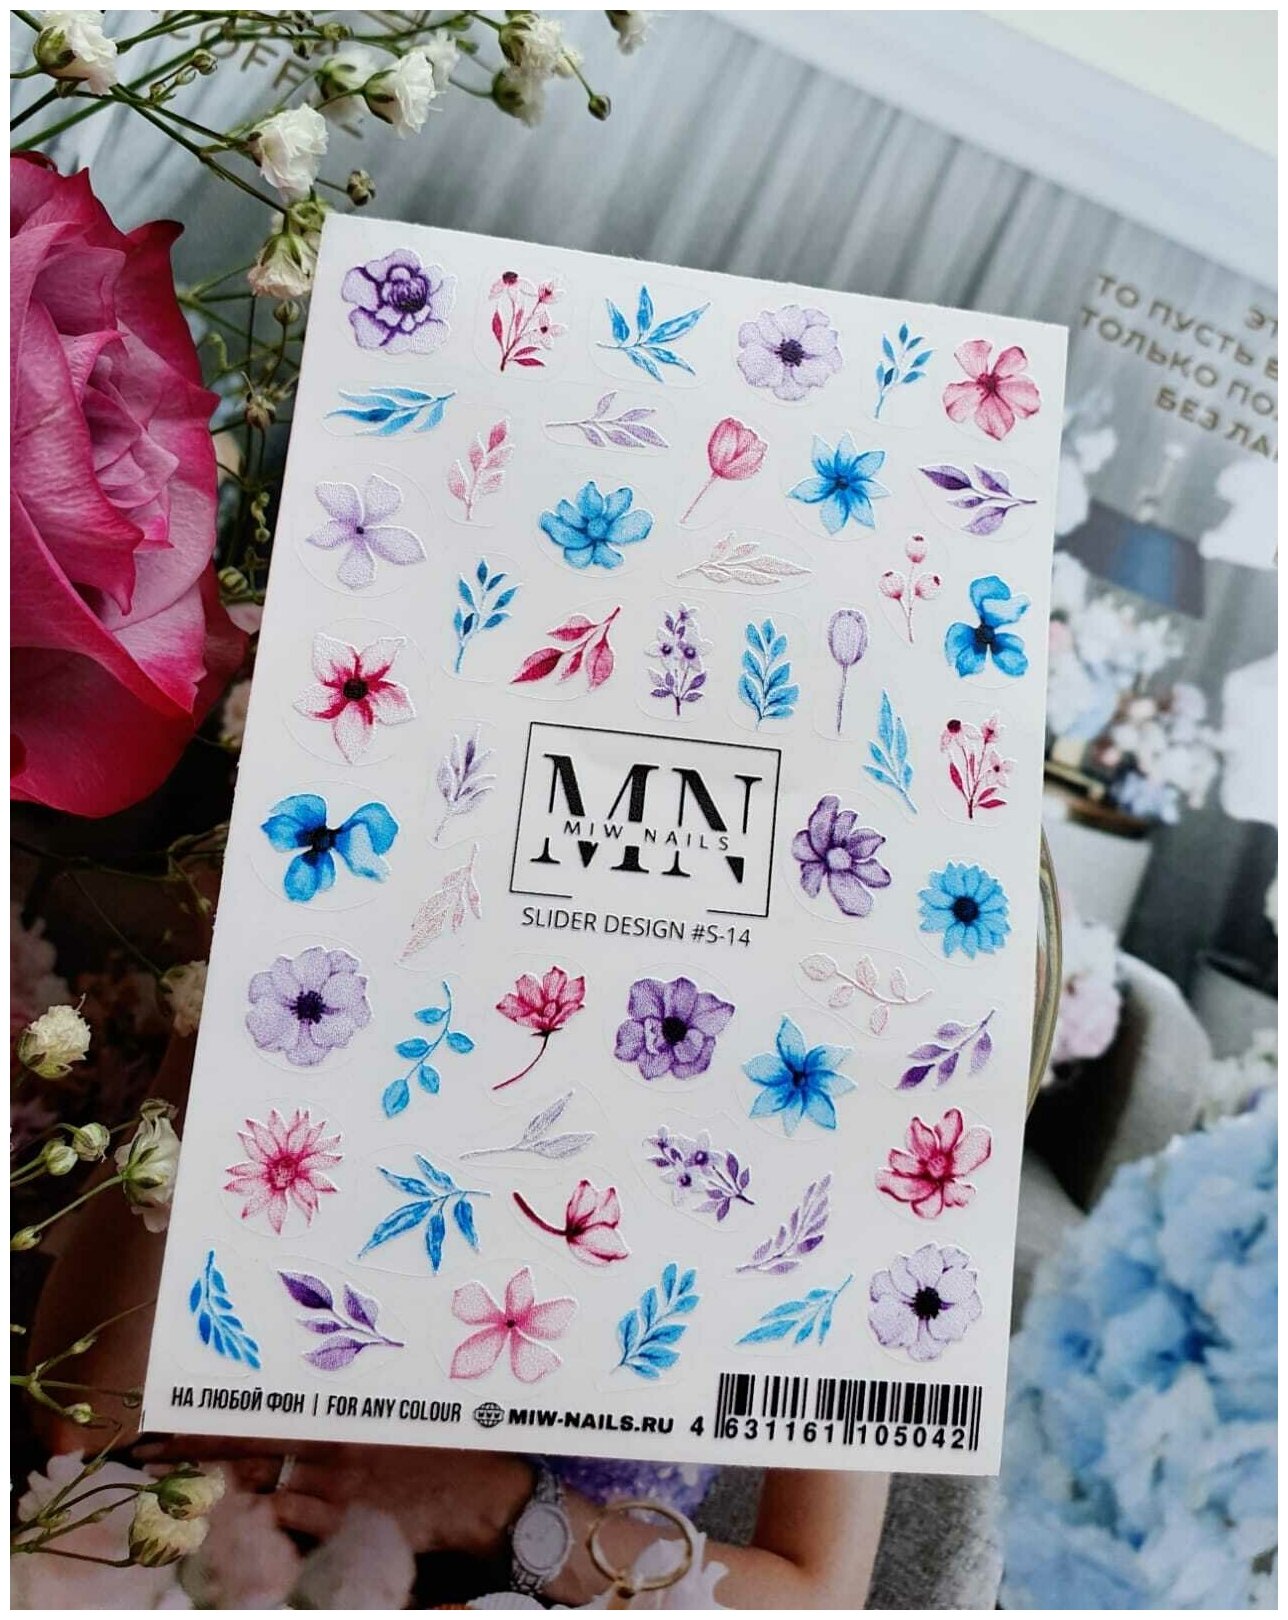 MIW Nails "Слайдеры для ногтей" водные наклейки для дизайна #S-14 цветной листья, цветы